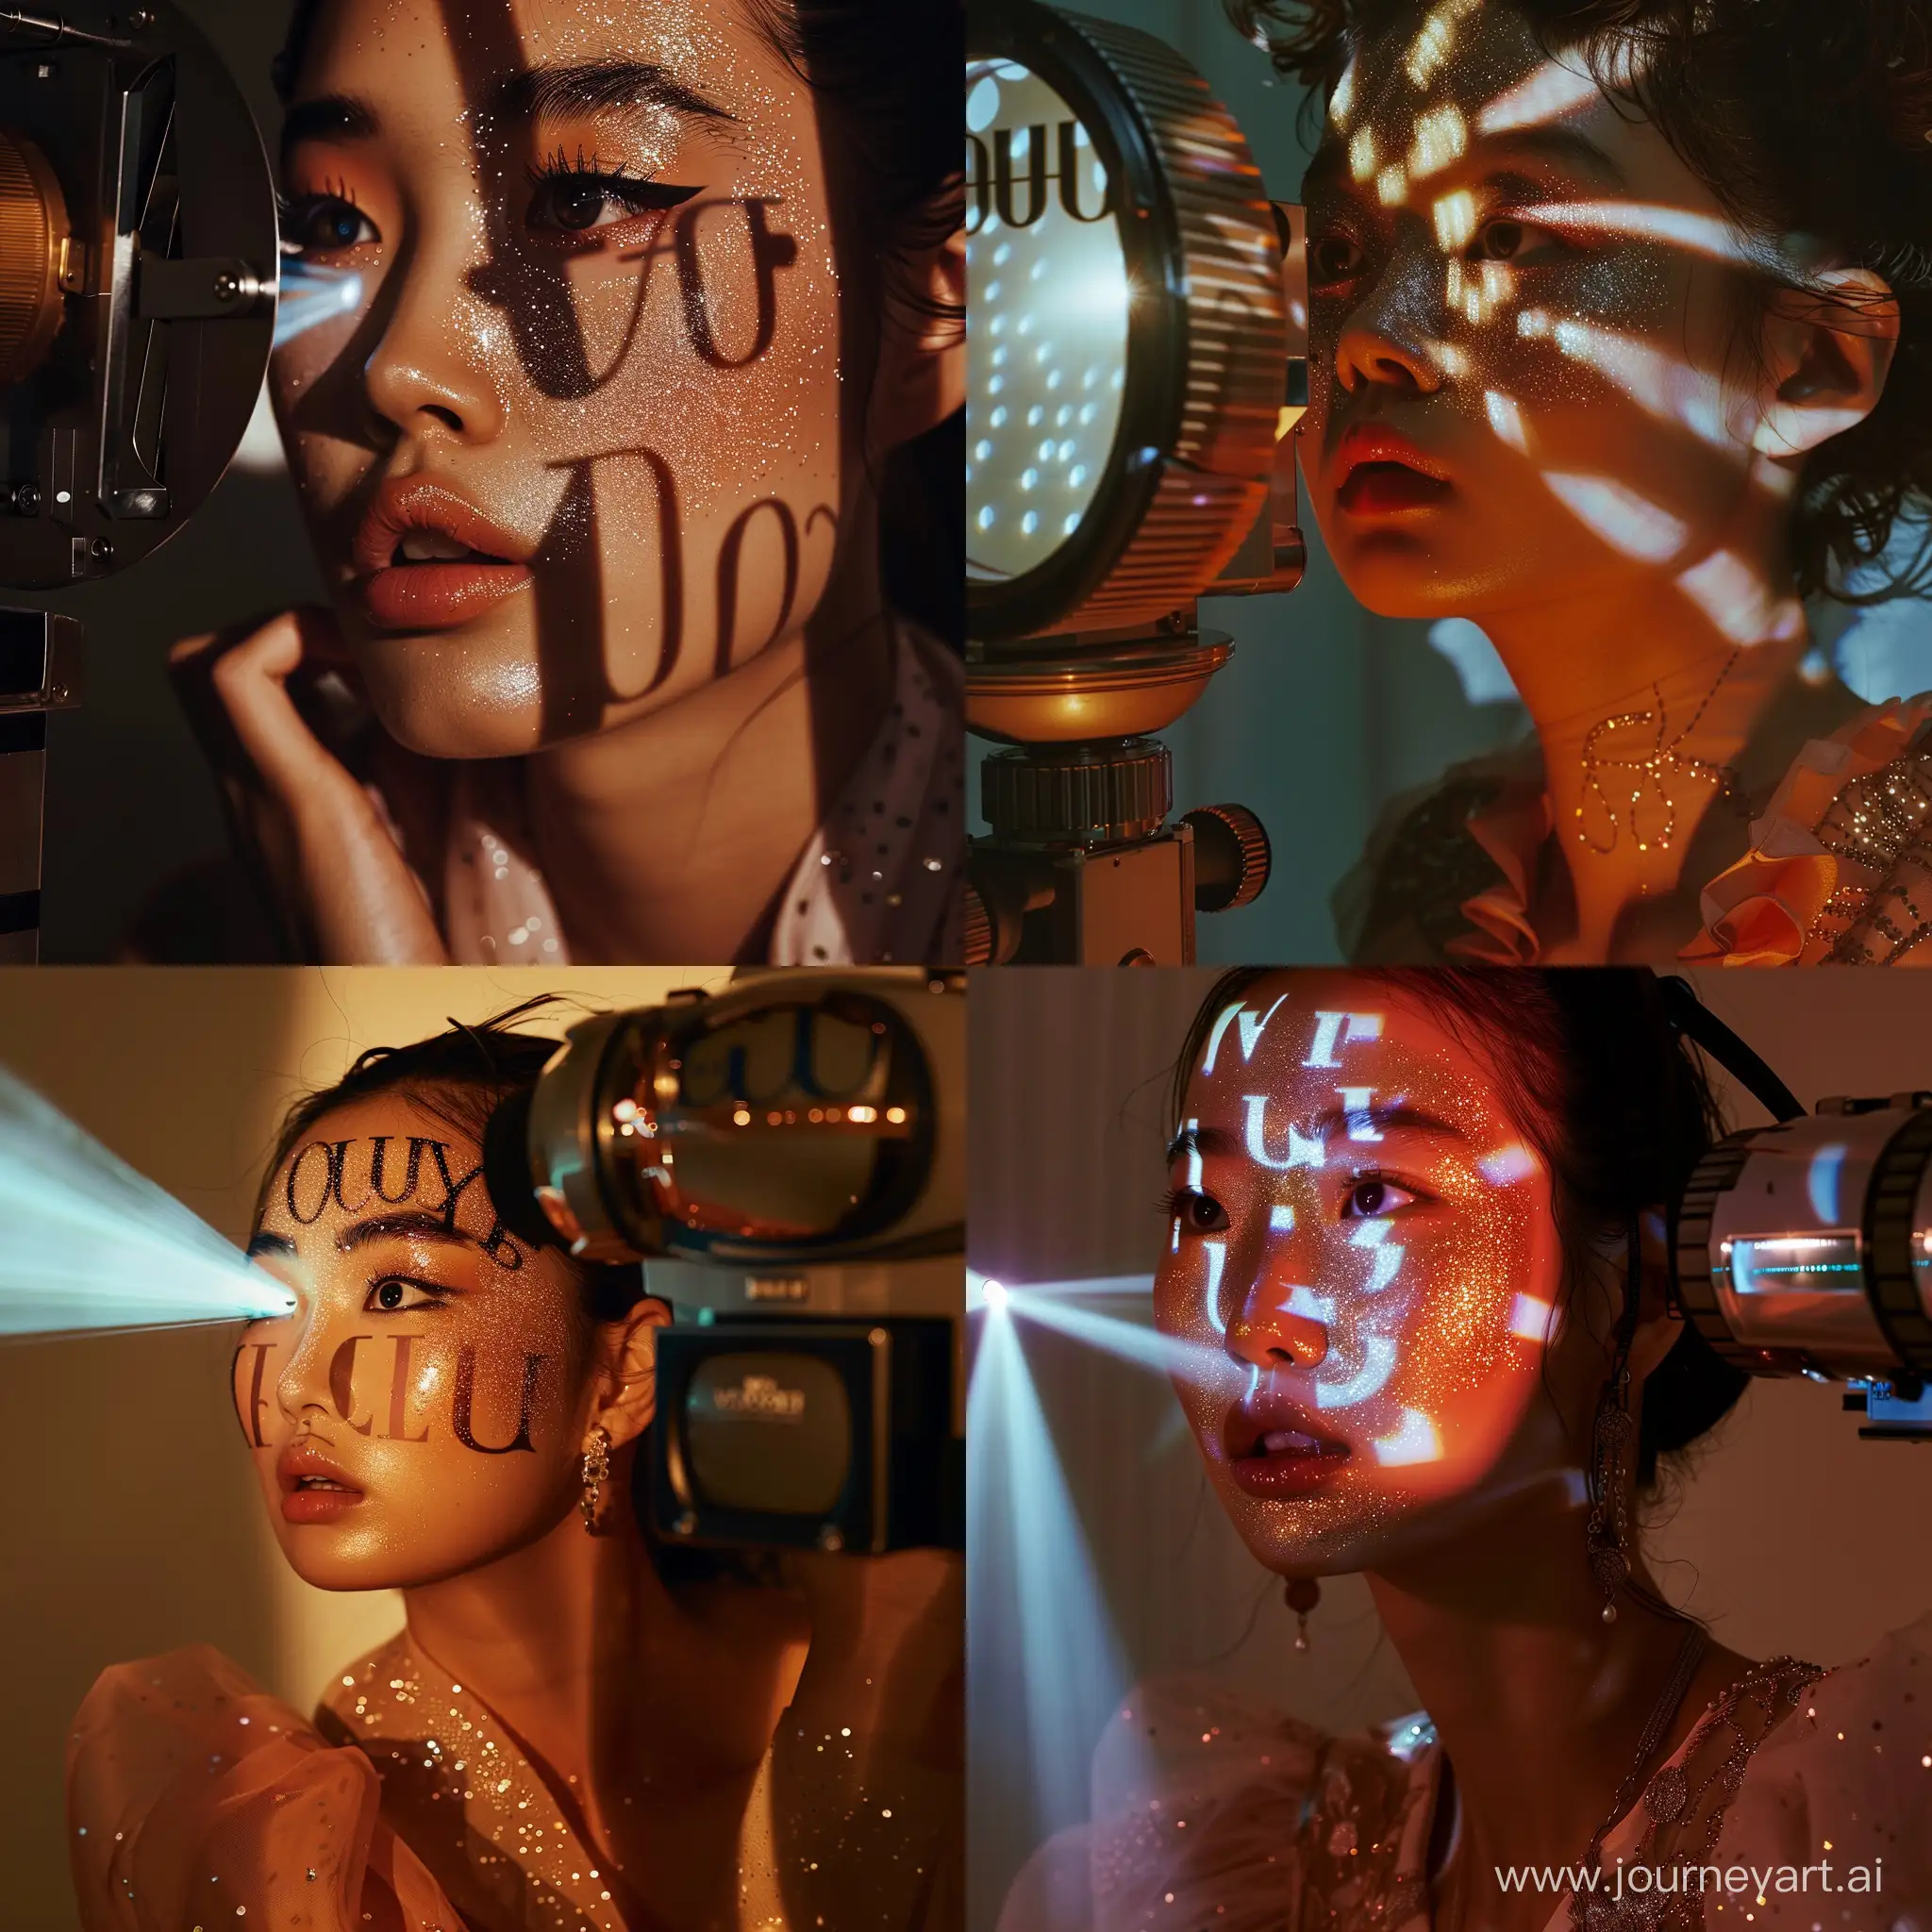 Обложка журнала Vogue, Корея, светит на лицо проектор, проекторная съемка, тень иероглифы, глиттер на лице, персиковый макияж, мода, случайная поза, 1/250s, ISO 100, высокая детализация